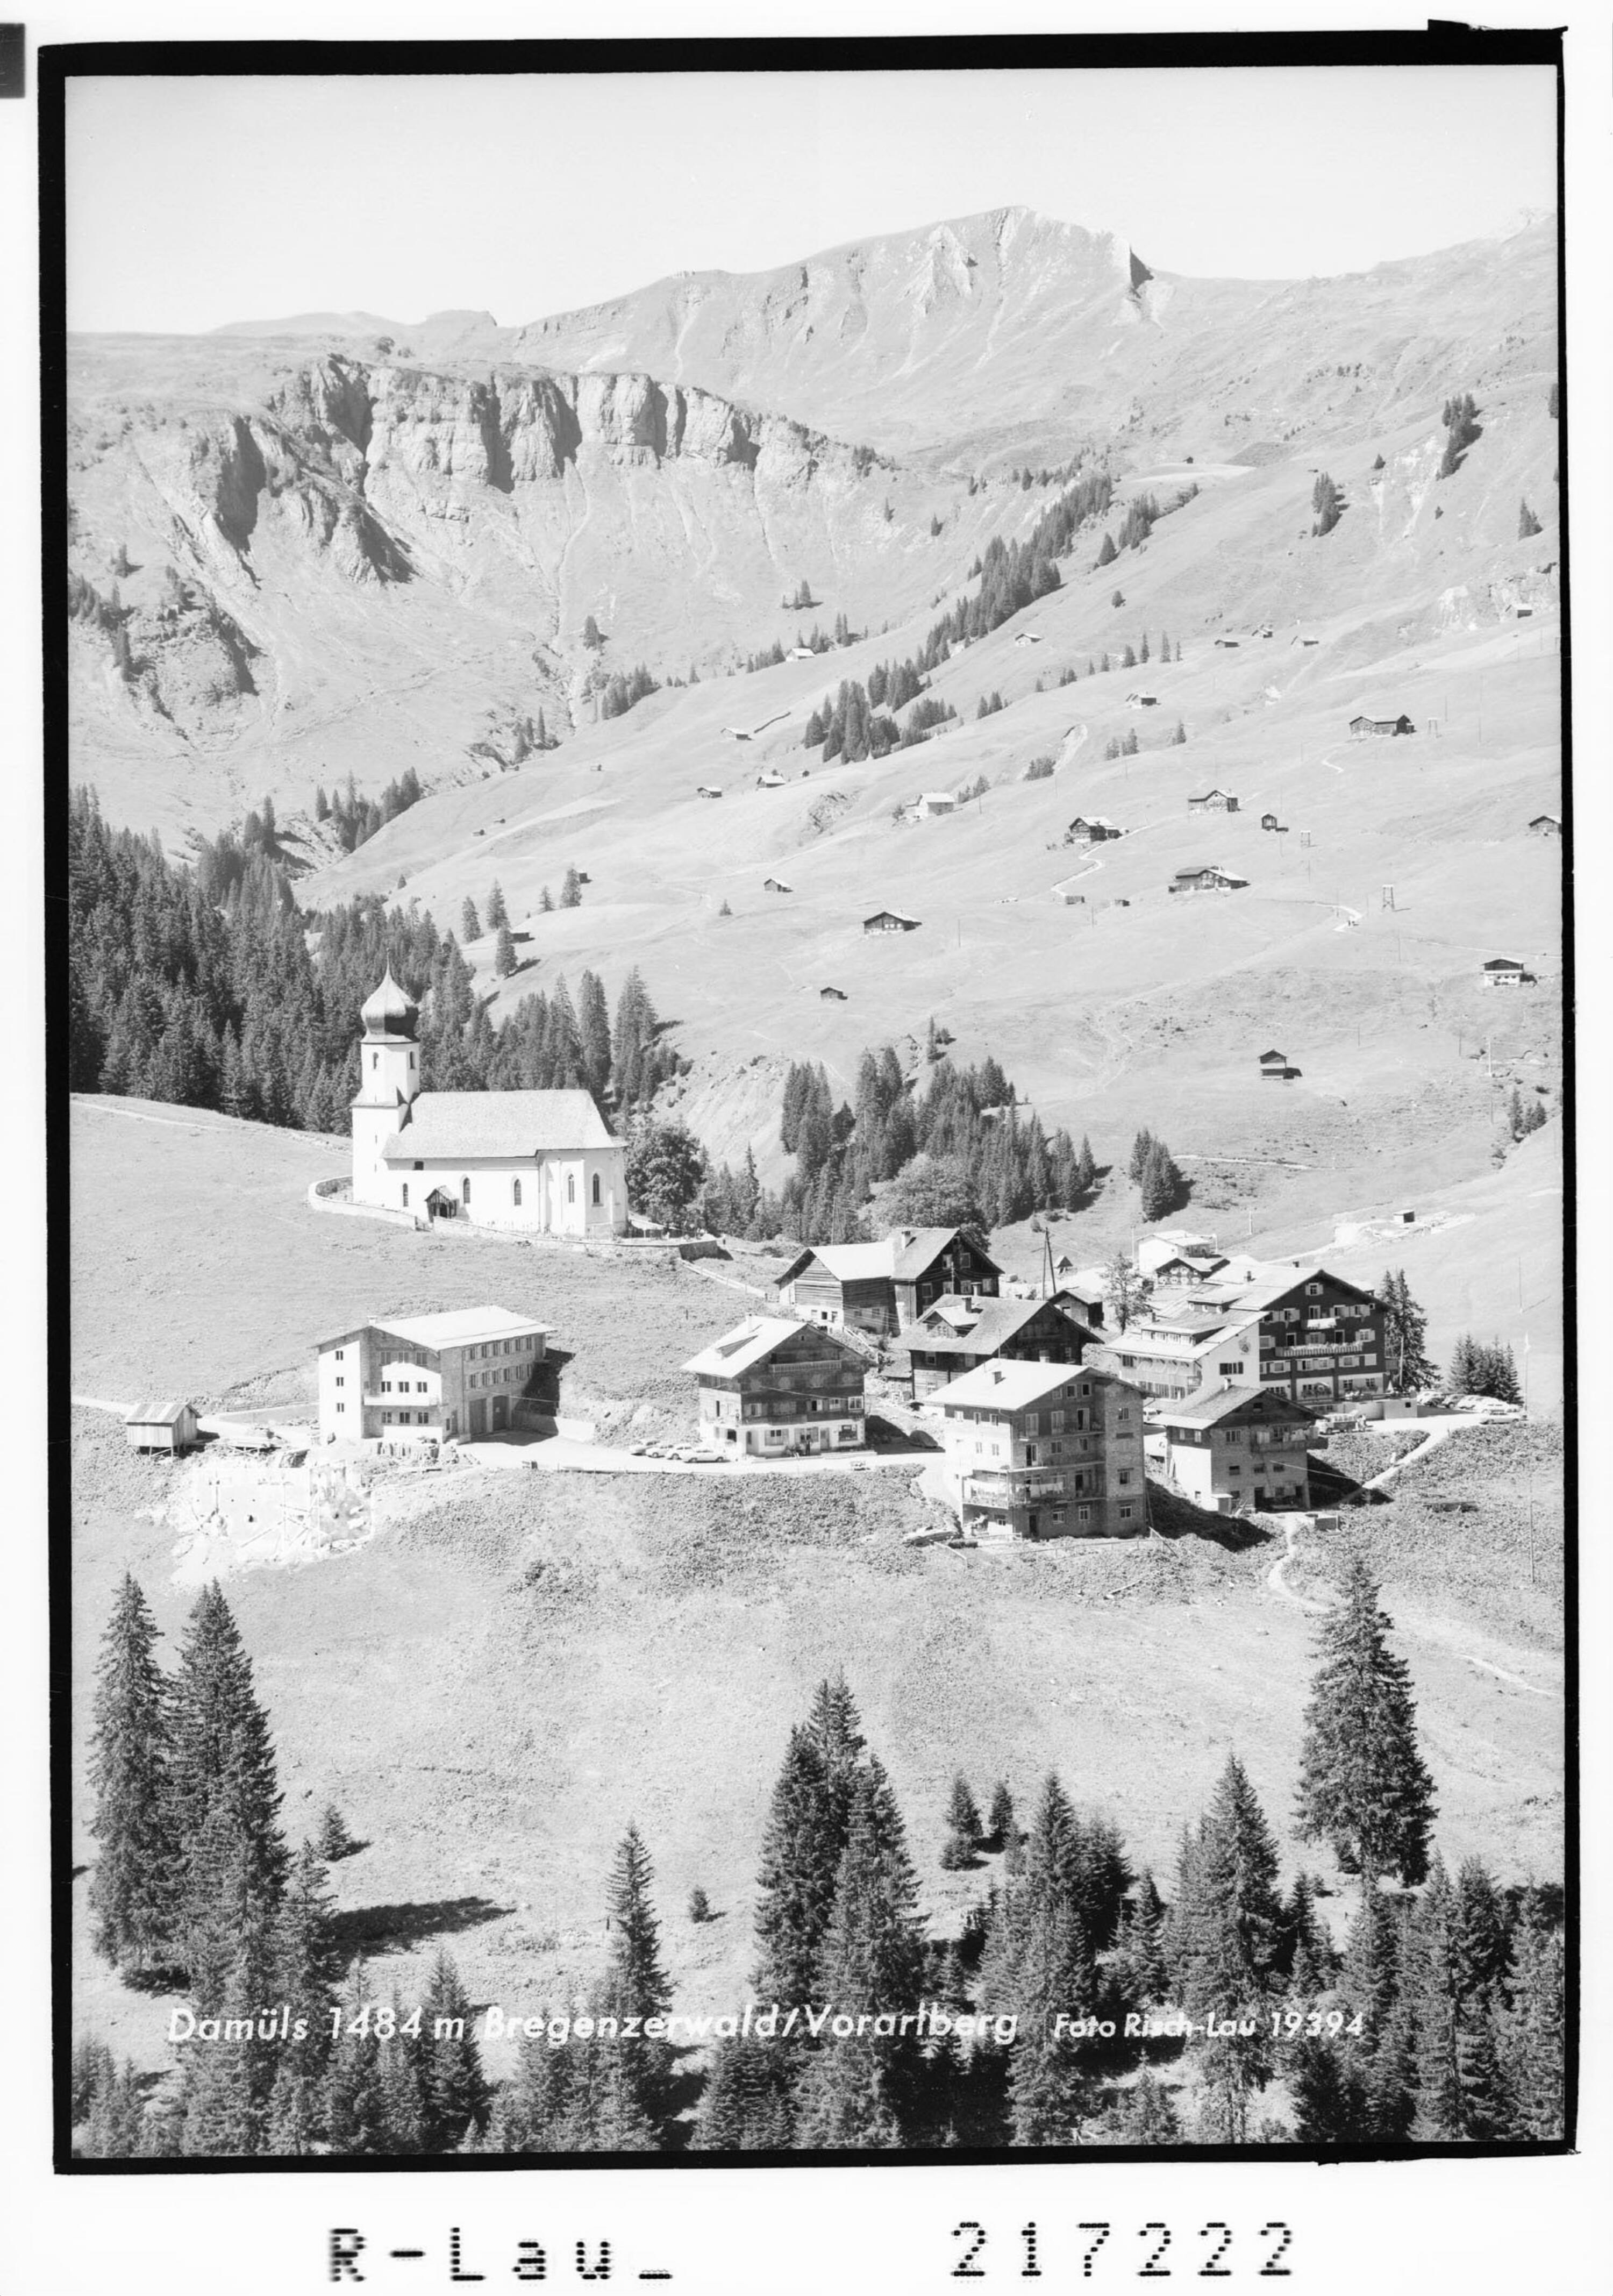 Damüls 1484 m Bregenzerwald / Vorarlberg></div>


    <hr>
    <div class=